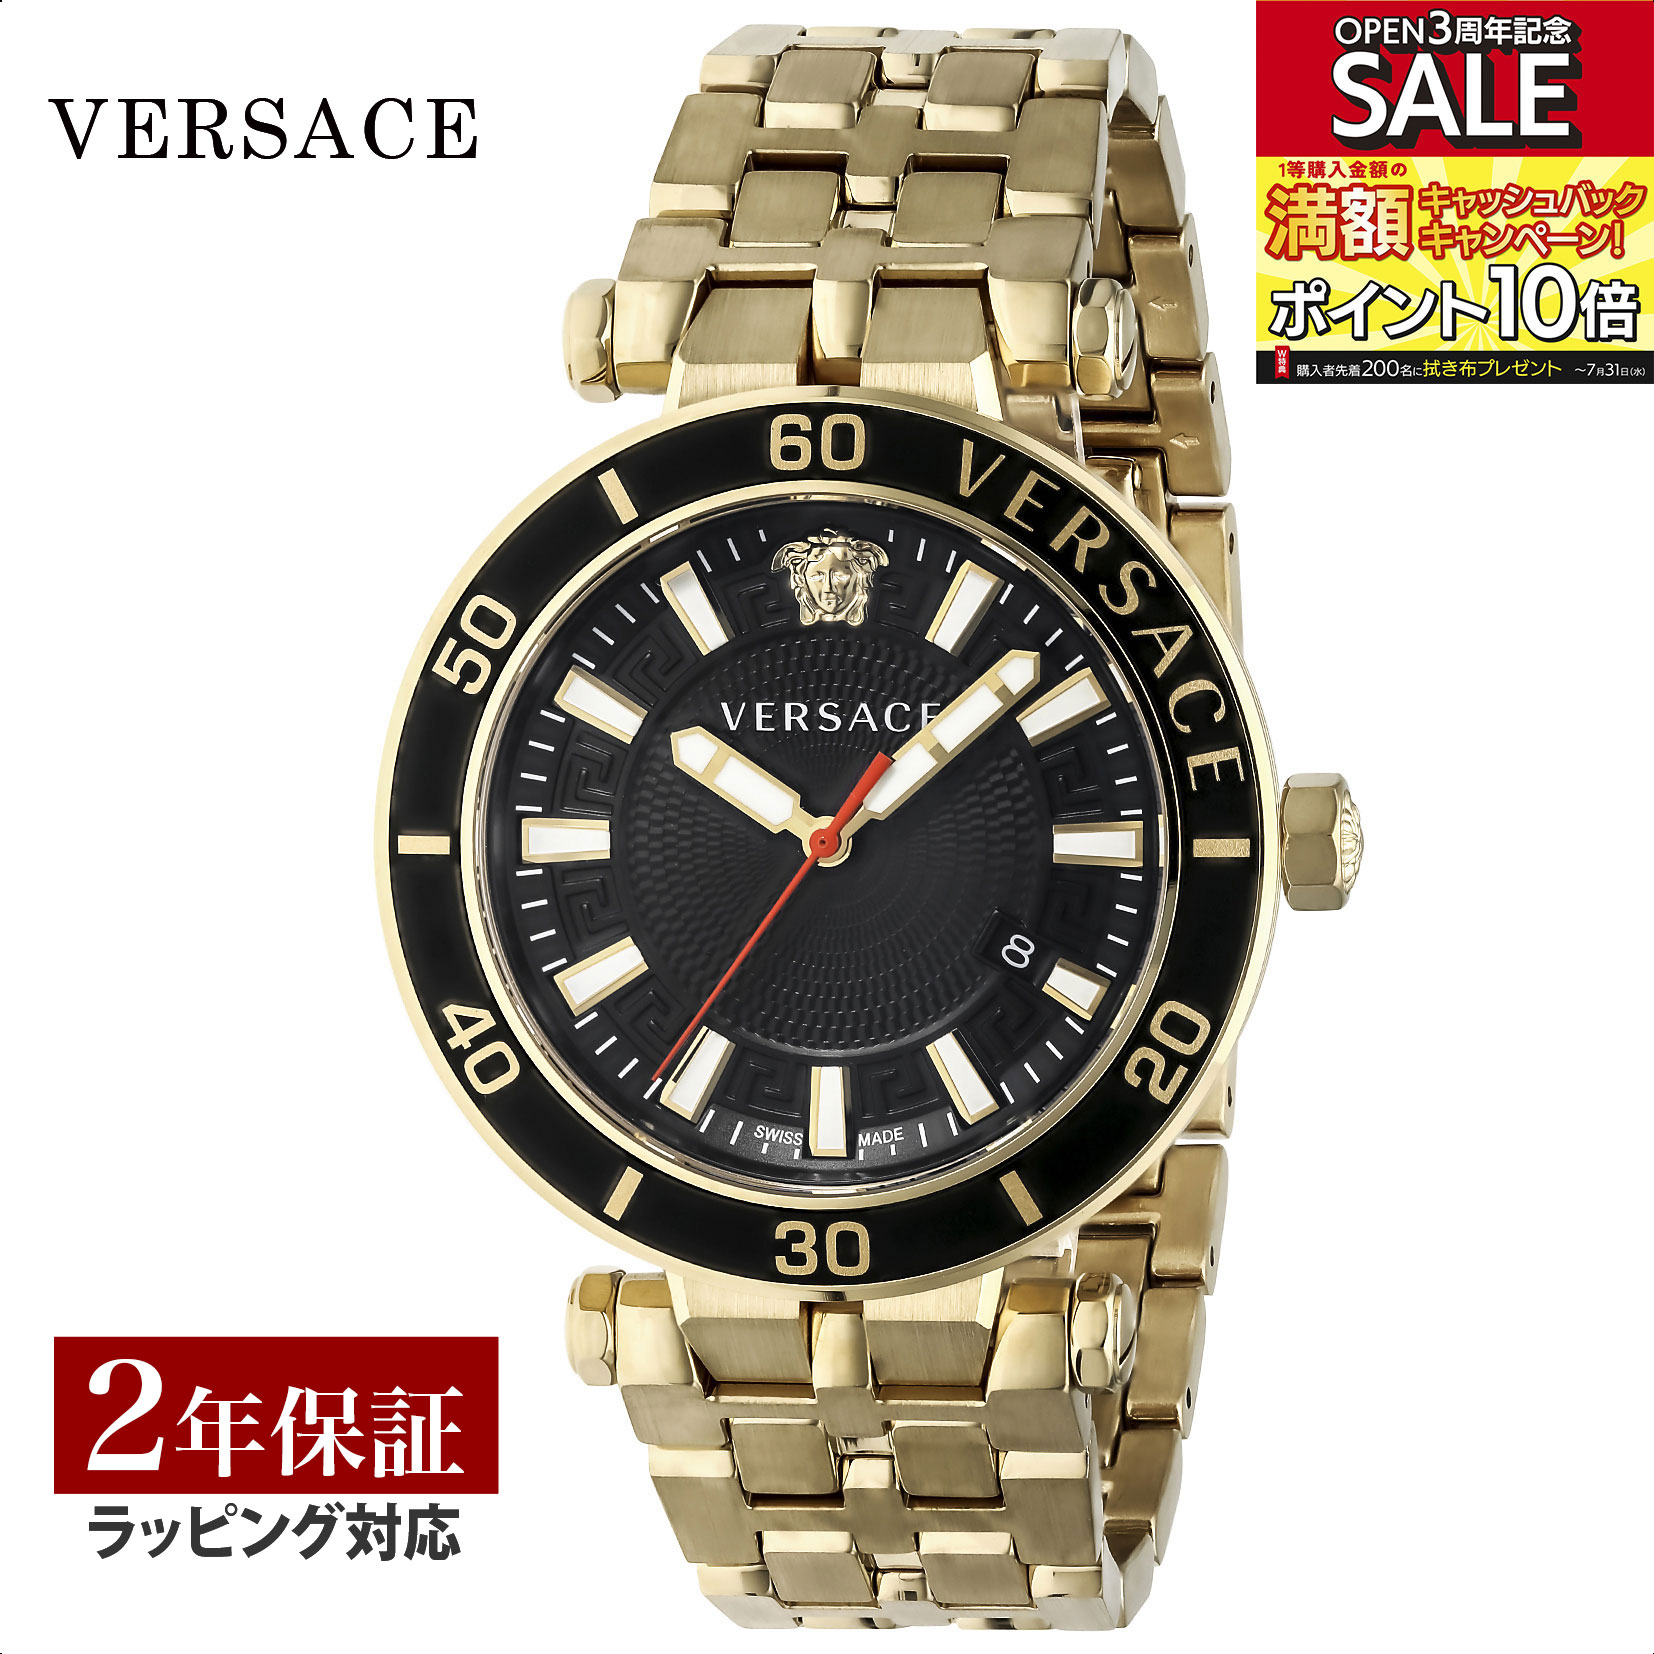 ヴェルサーチェ VERSACE メンズ 時計 グレカ スポーツ Greca Sport クォーツ ブラック VEZ300721 腕時計 高級腕時計 ブランド